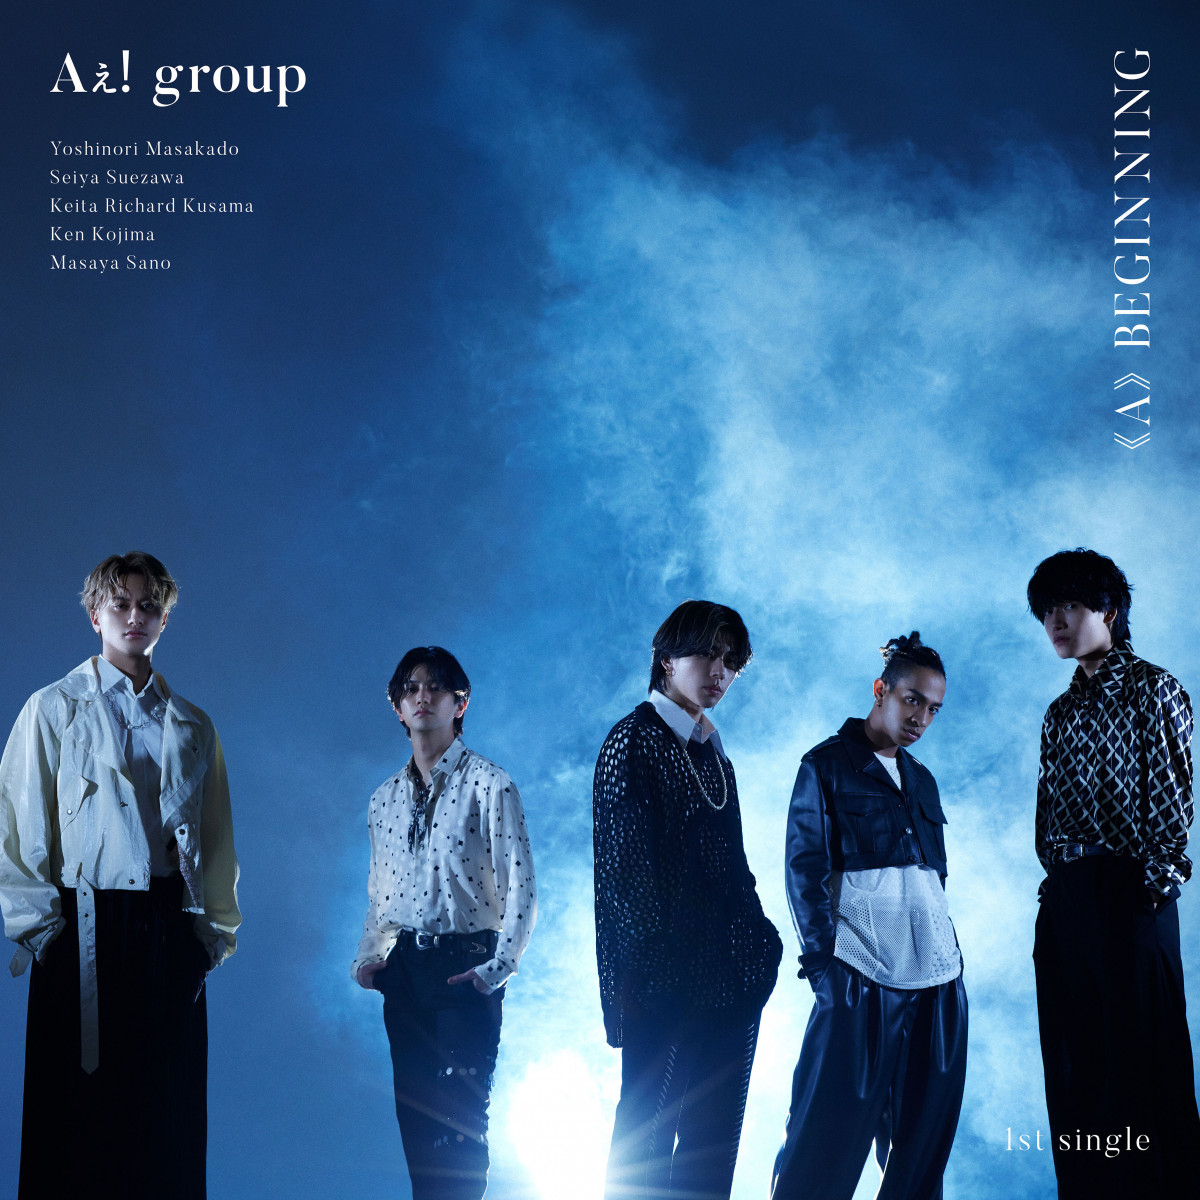 画像・写真 | Aぇ! group、デビューシングル収録詳細が発表 関西 